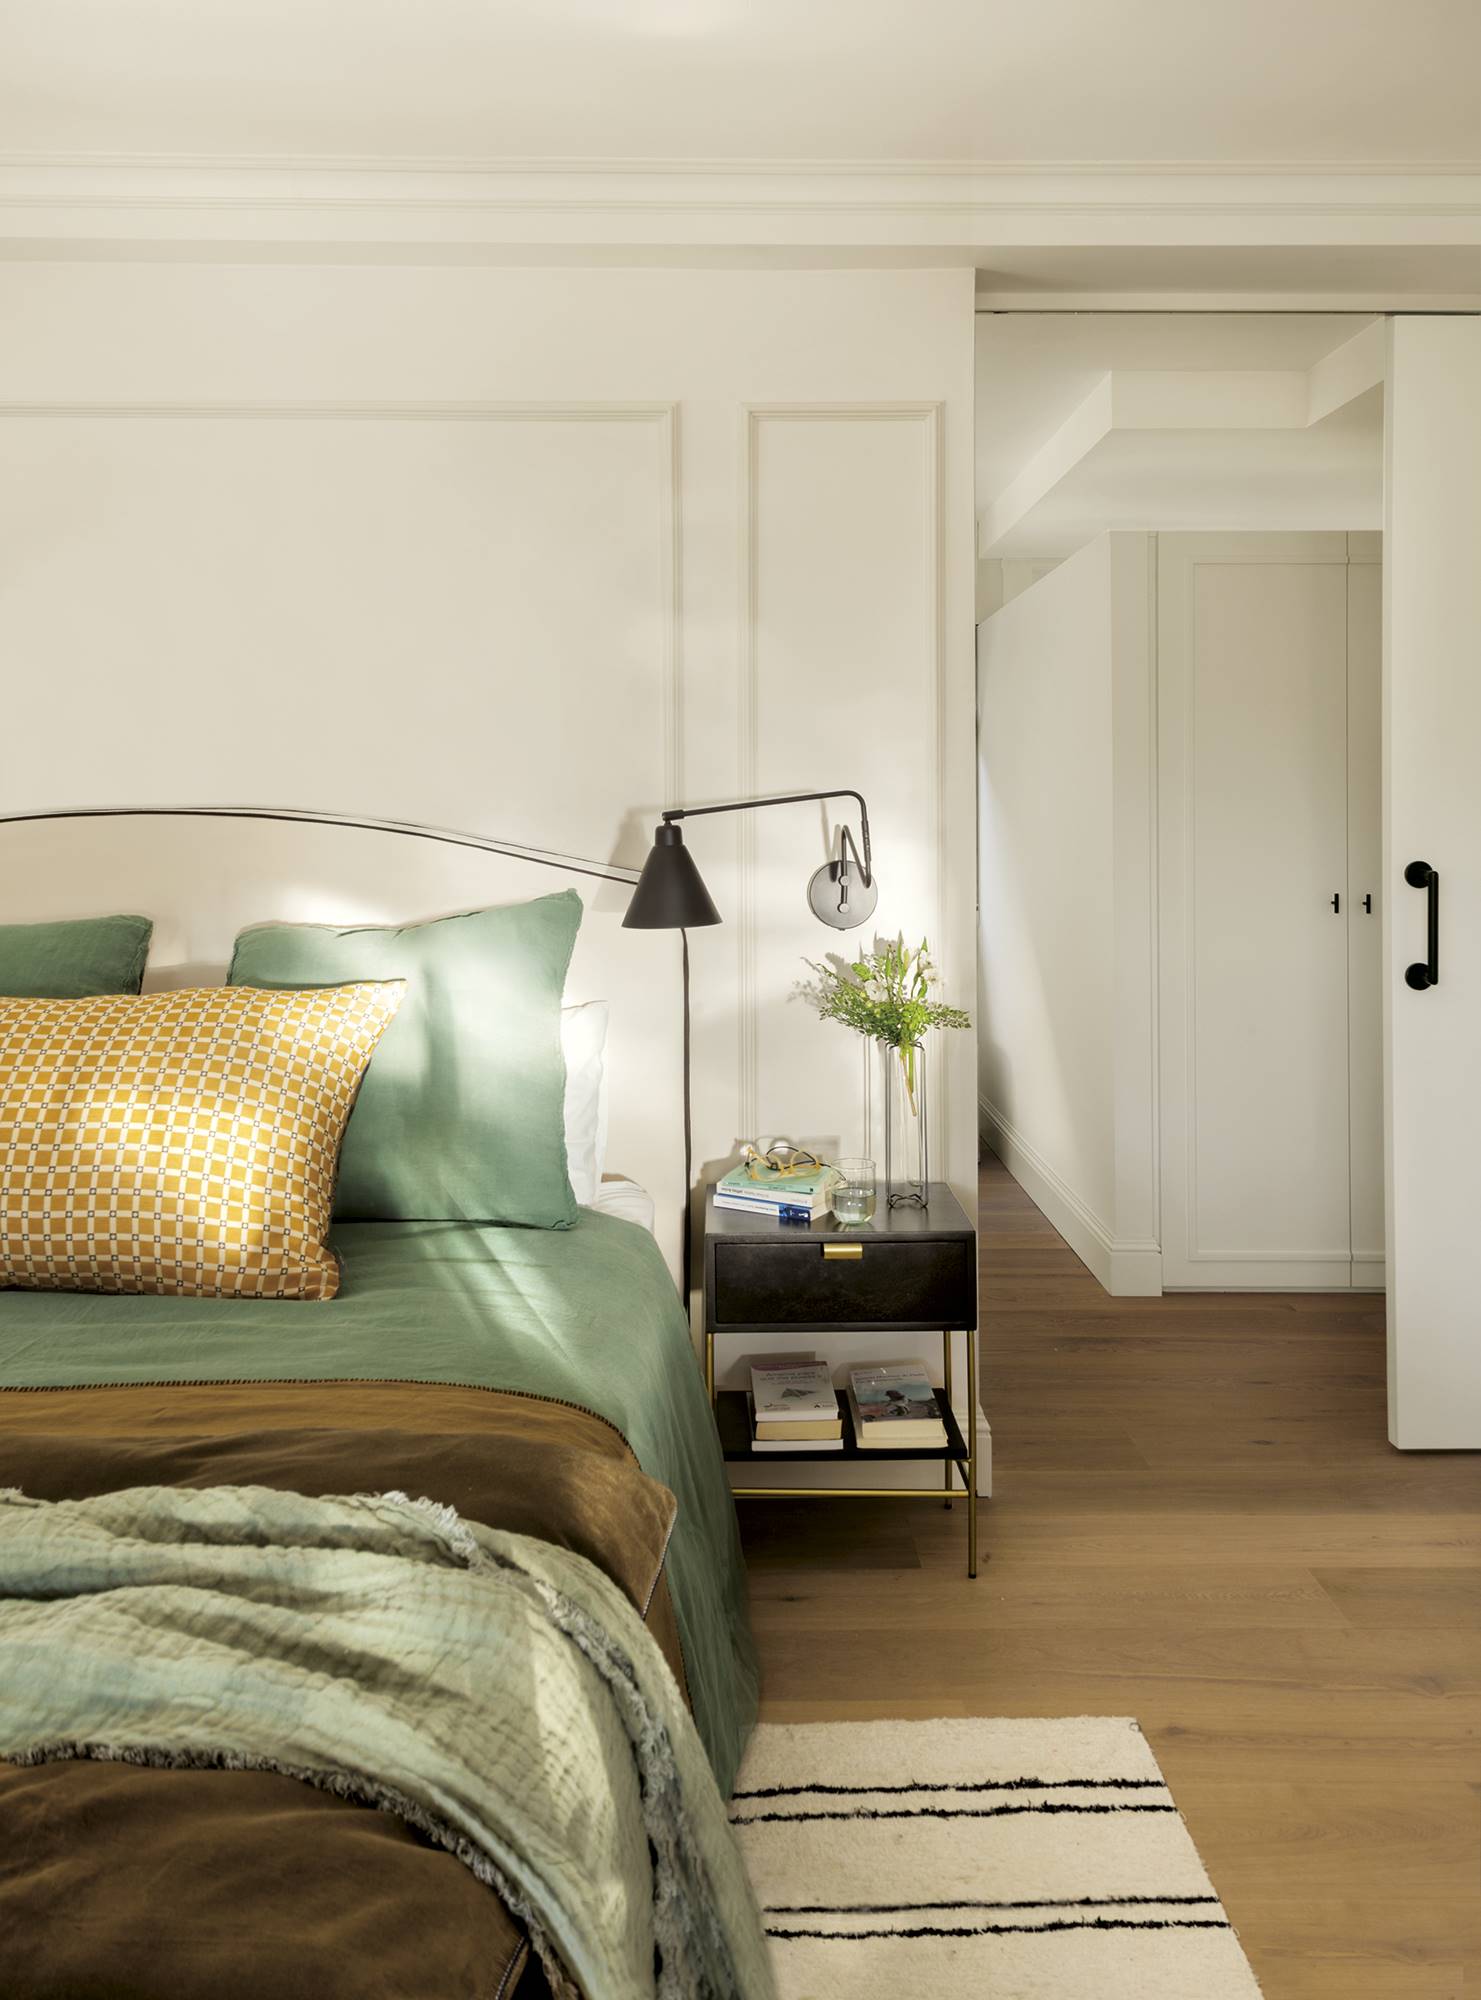 Dormitorio con vestidor, decorado en blanco con molduras, cabecero tapizado, ropa de cama verde y apliques de lectura negros.